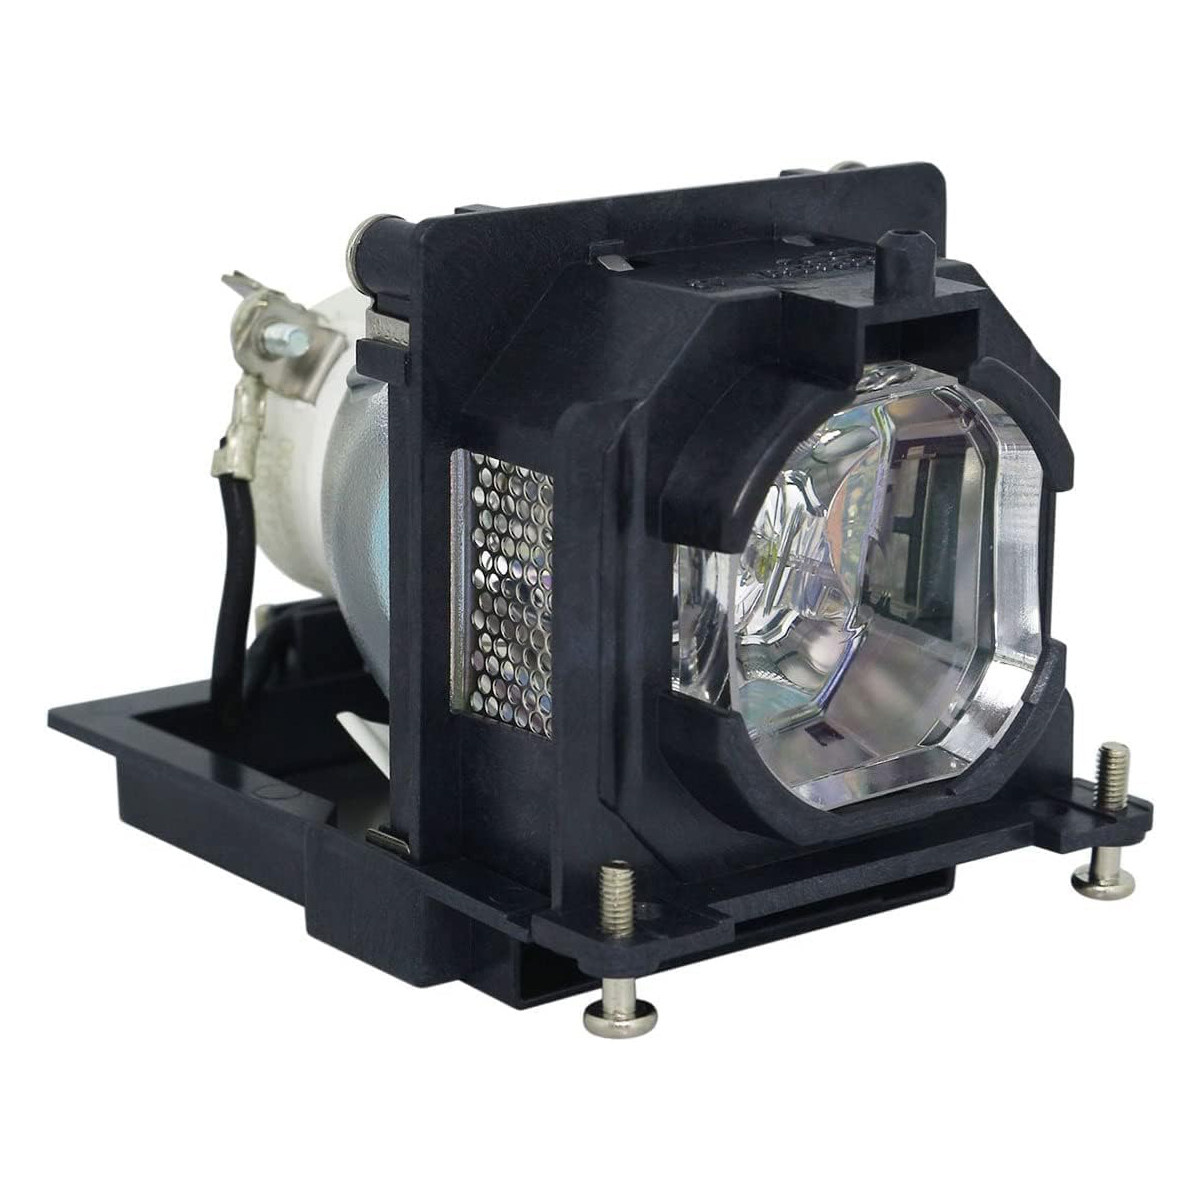 Replacement projector lamp ET-LAL500 For PANASONIC PT-LB280 PT-LB300 PT-LB303